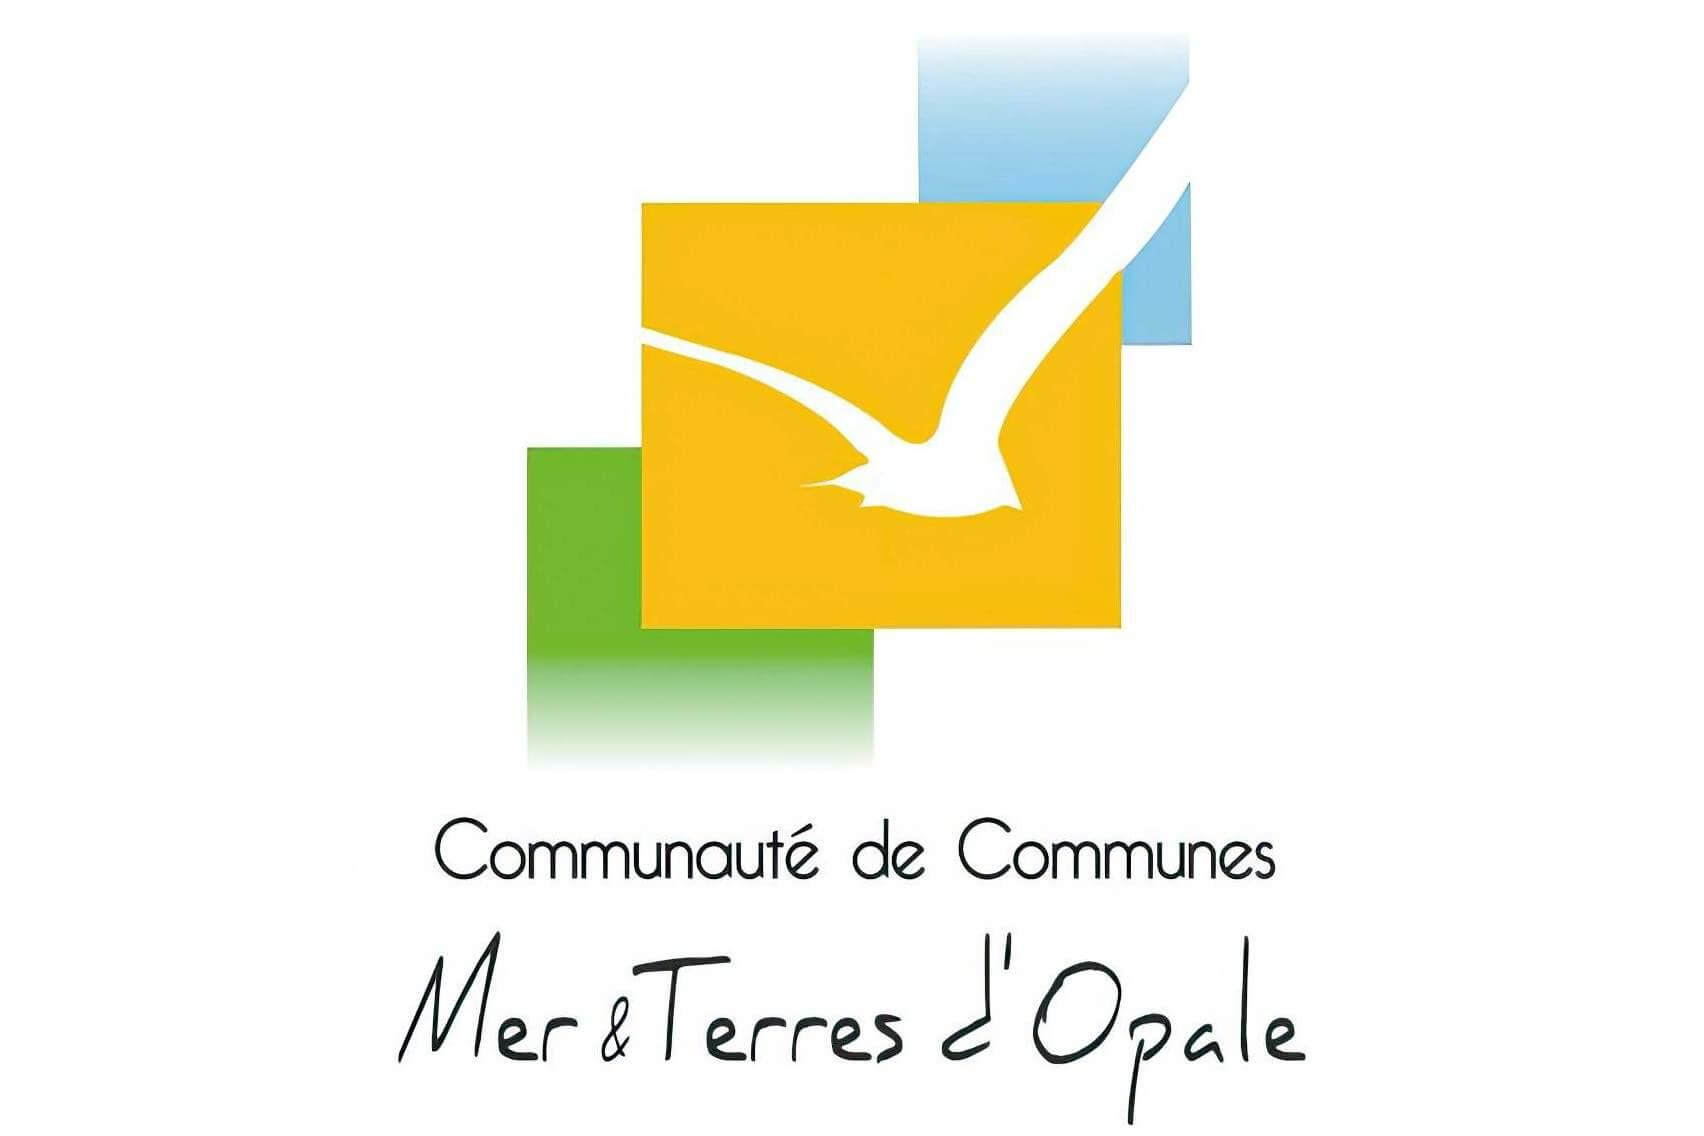 Communauté de Communes Mer & Terres d'Opale